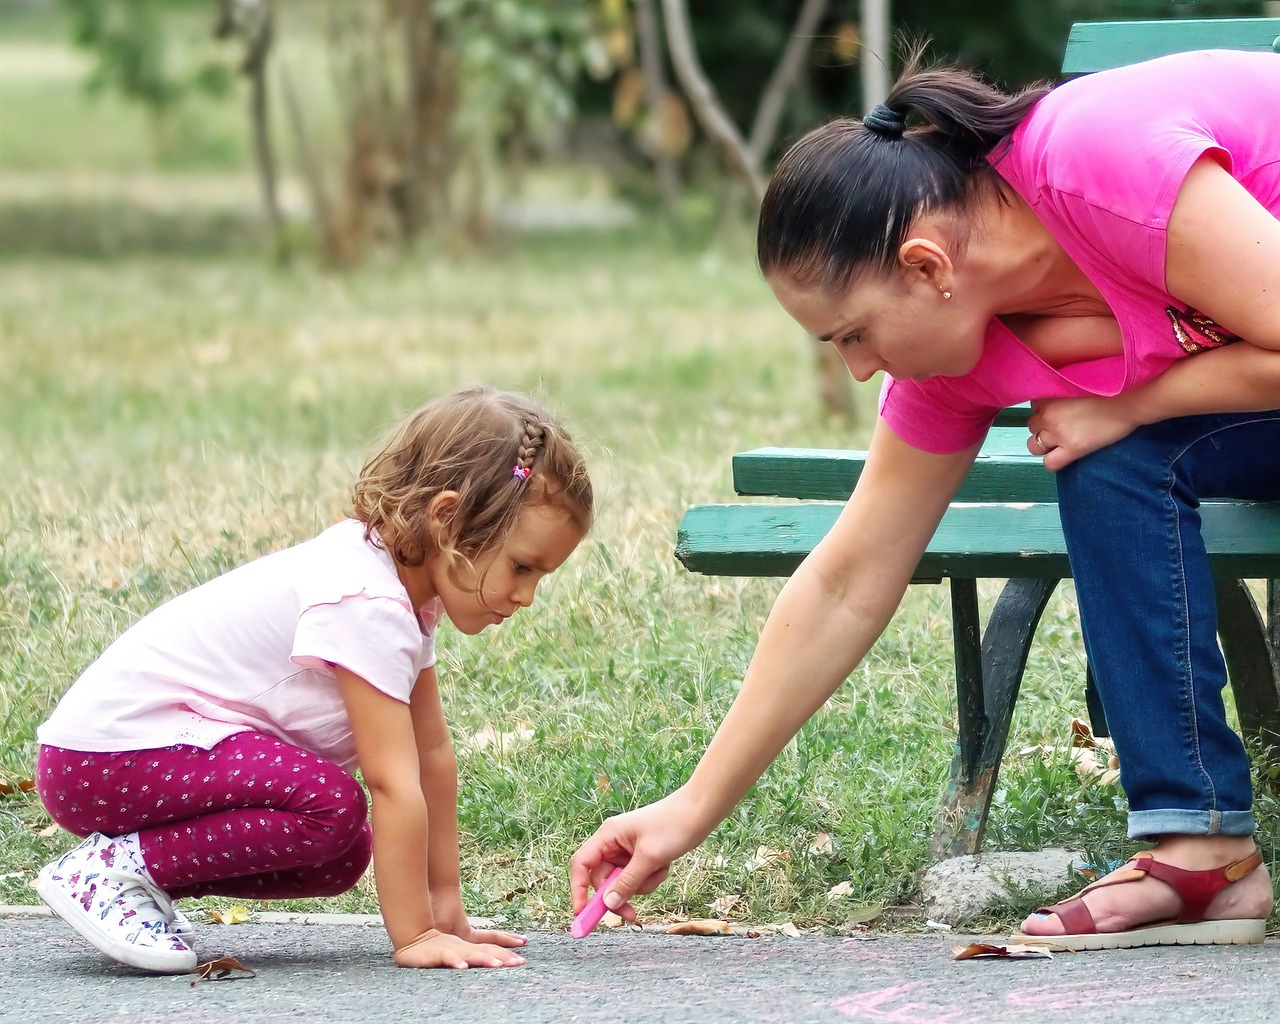 Nueve normas de convivencia que enseñar a los niños cuando vamos al parque